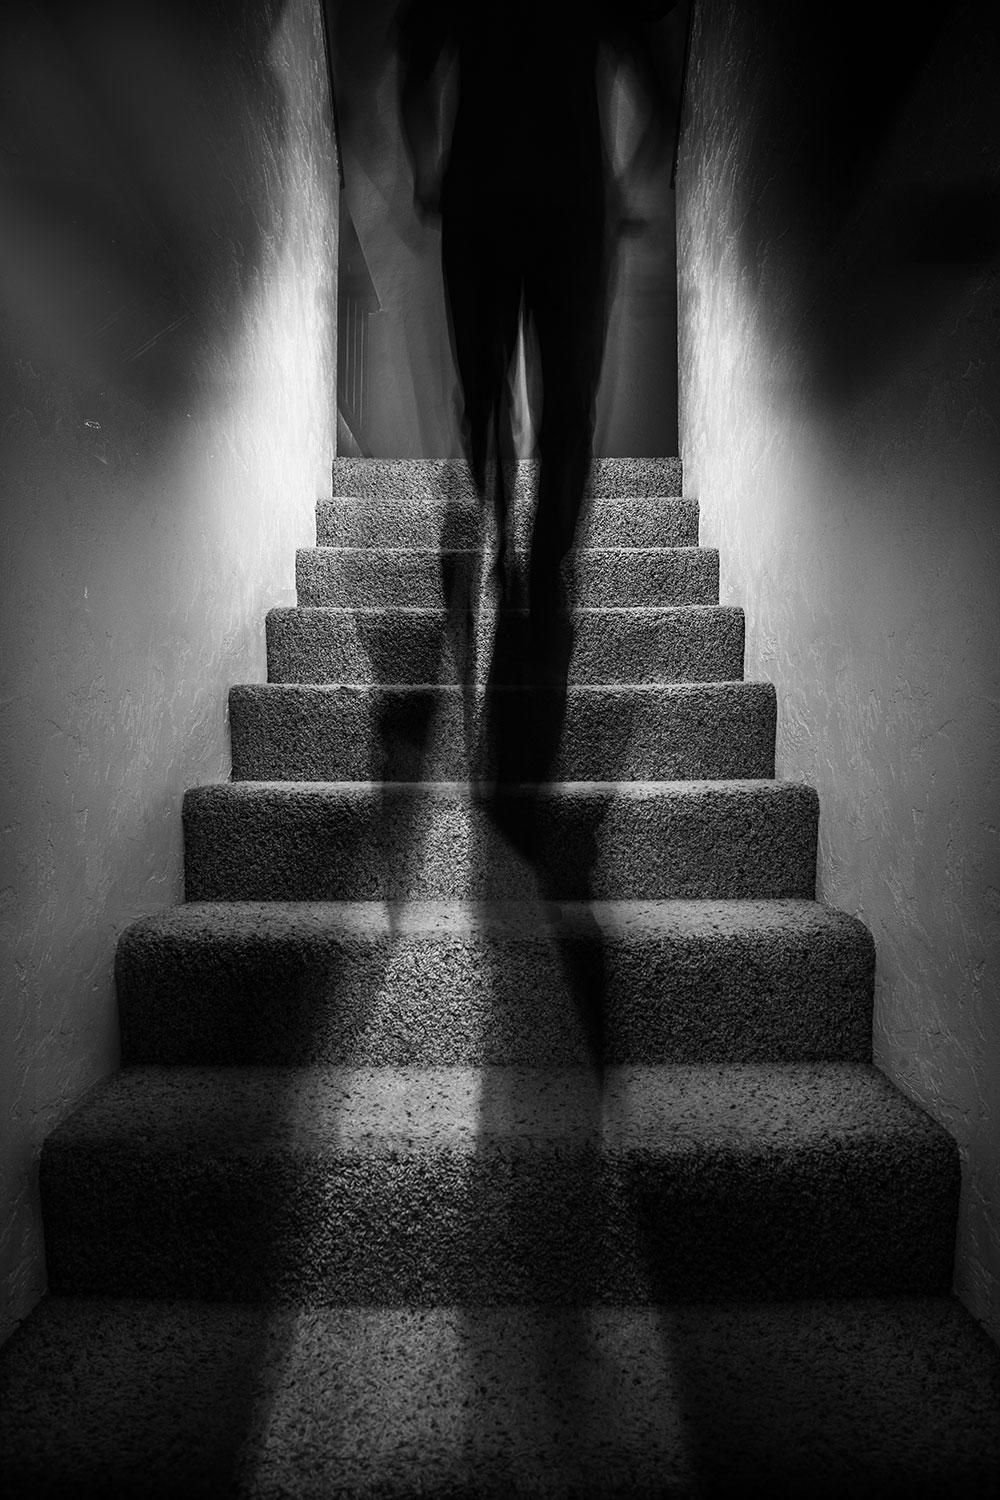 Читать шаг в тень. Лестница вверх. Человек на лестнице. В тени человека. Фотосессия на лестнице.